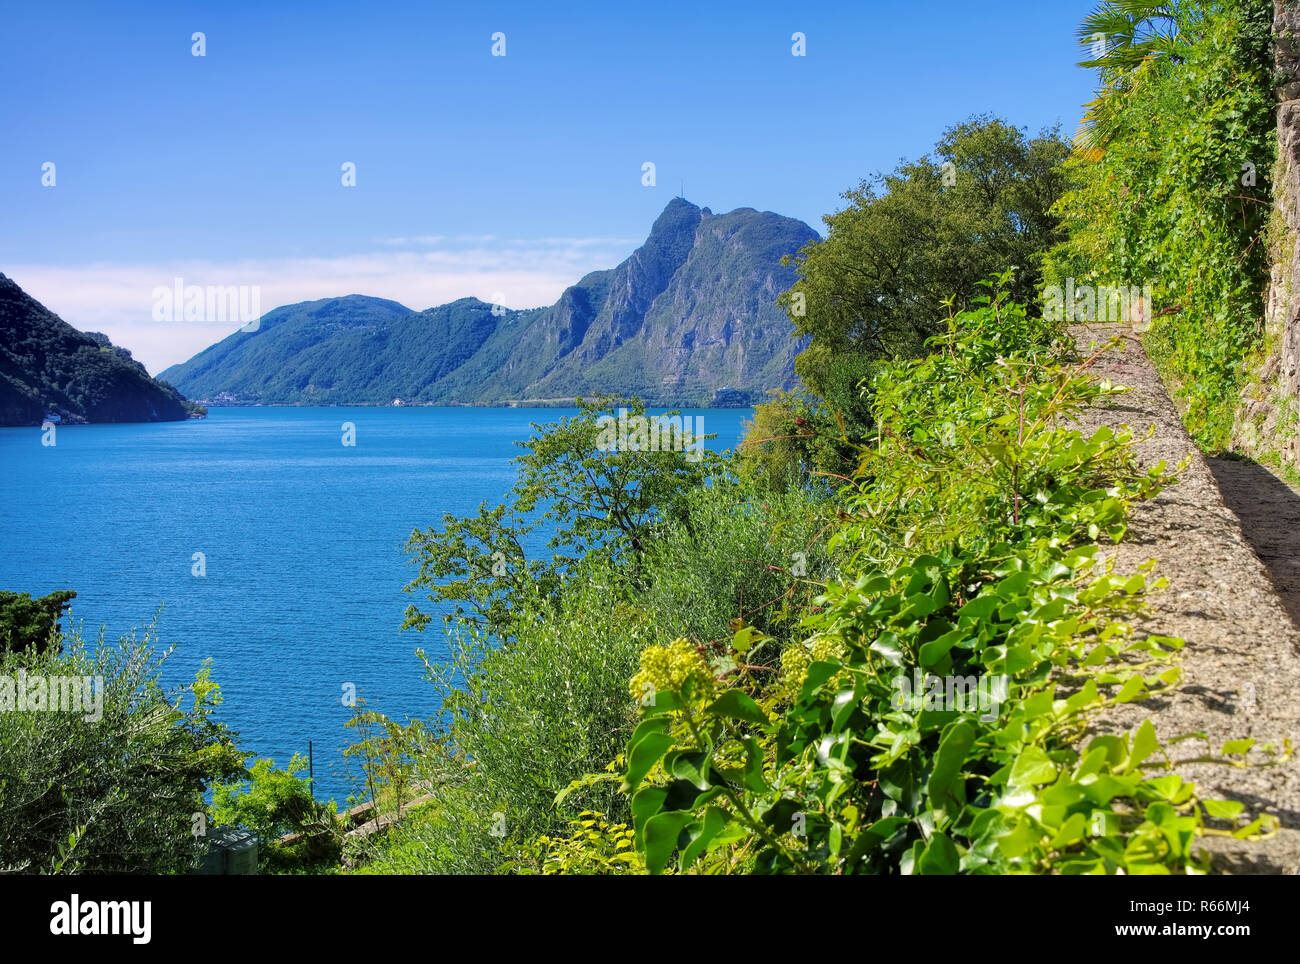 Il lago di Lugano e il monte san salvatore, Svizzera - Lago di Lugano e il monte san salvatore, Svizzera Foto Stock